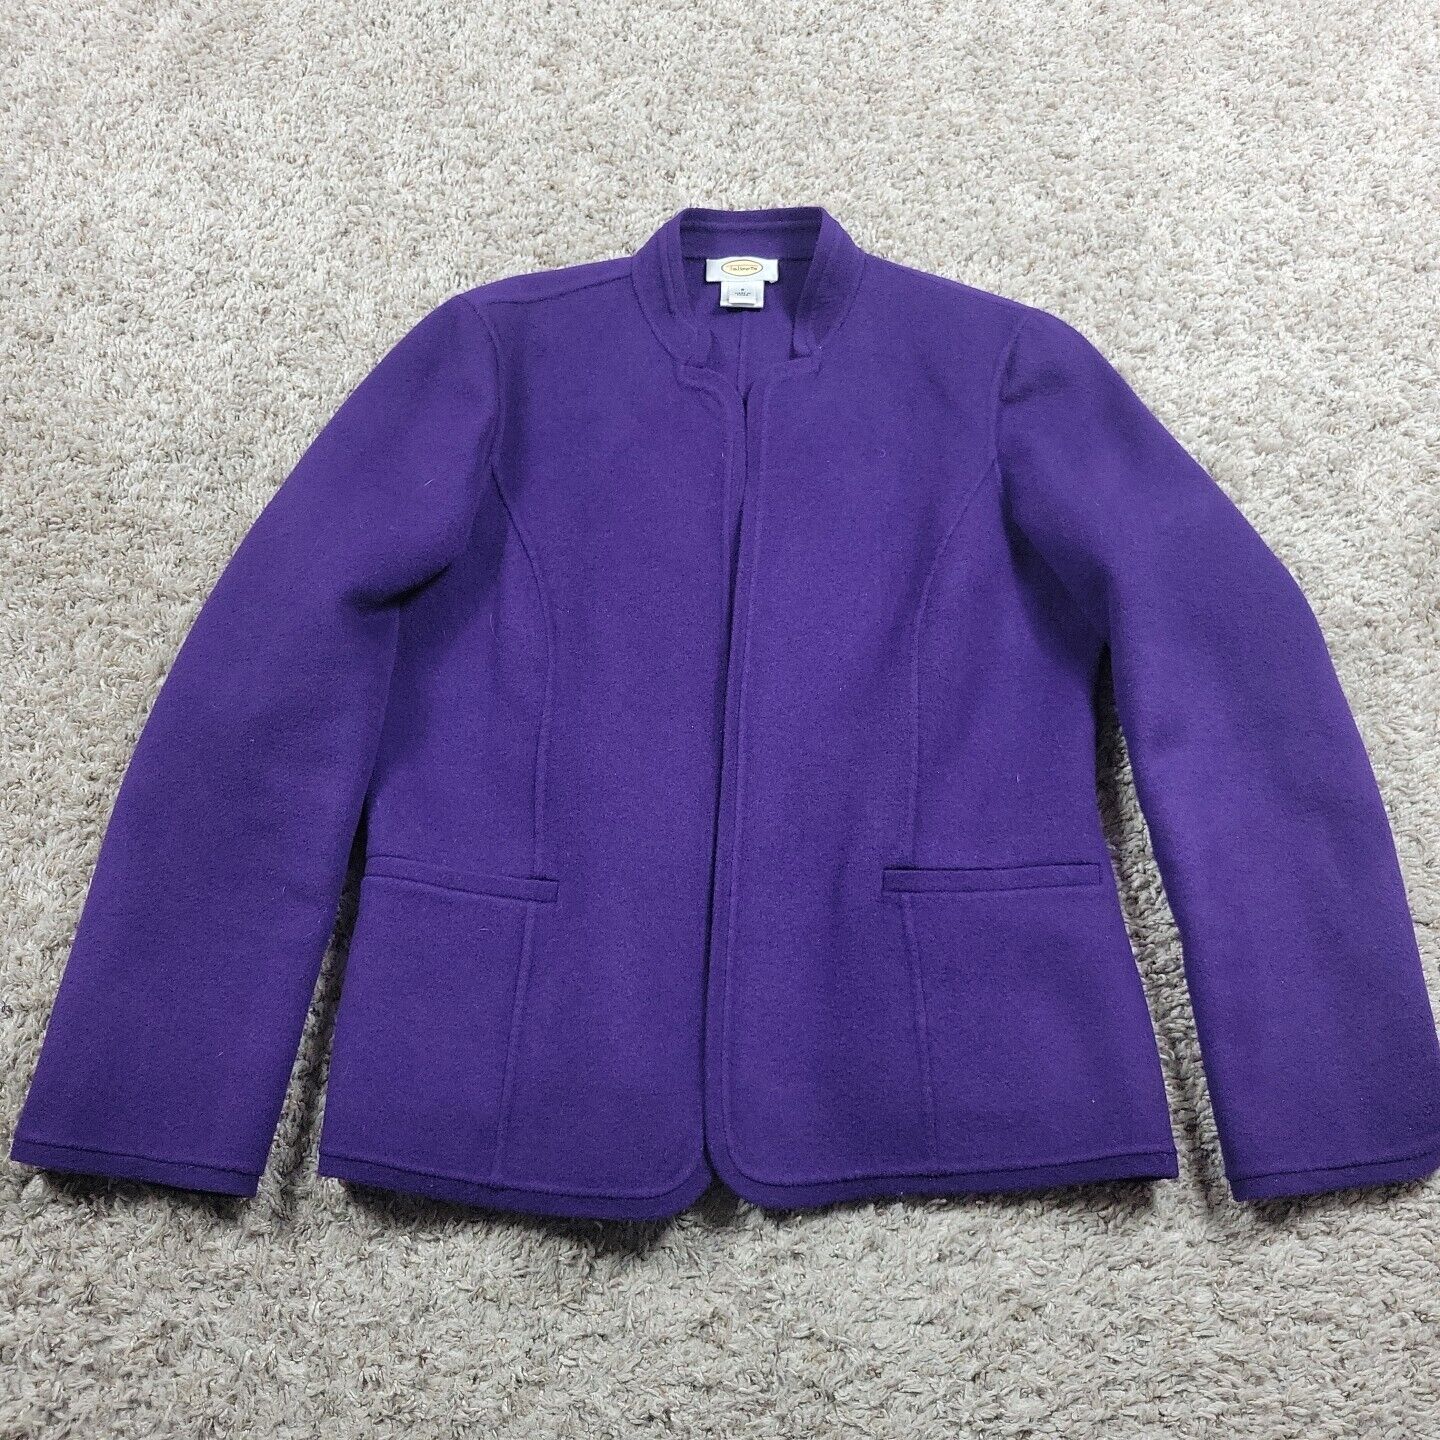 Talbots Cardigan Sweater Womens 8 Purple 100% Wool Open Long Sleeve 